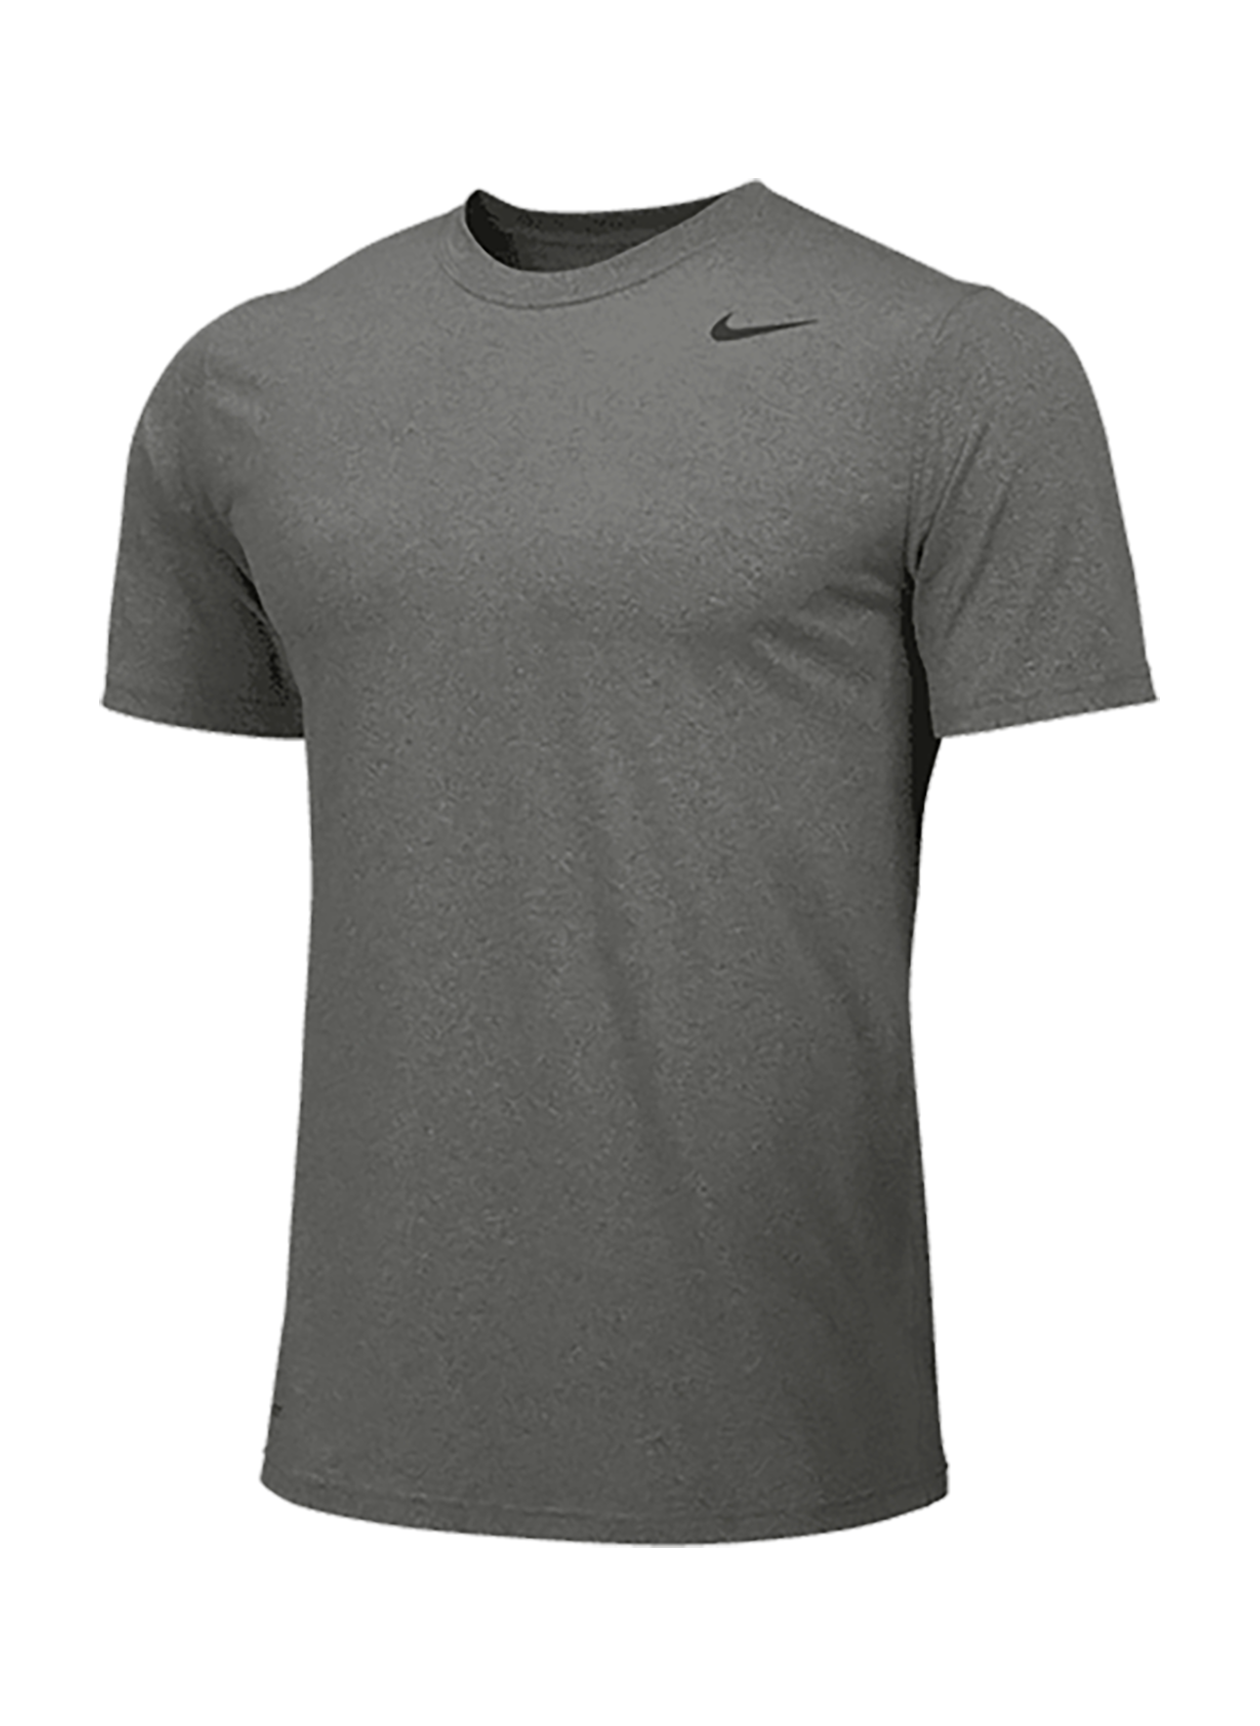 Business T-shirts | Nike Men's Carbon Heather Dri-FIT Legend T-Shirt